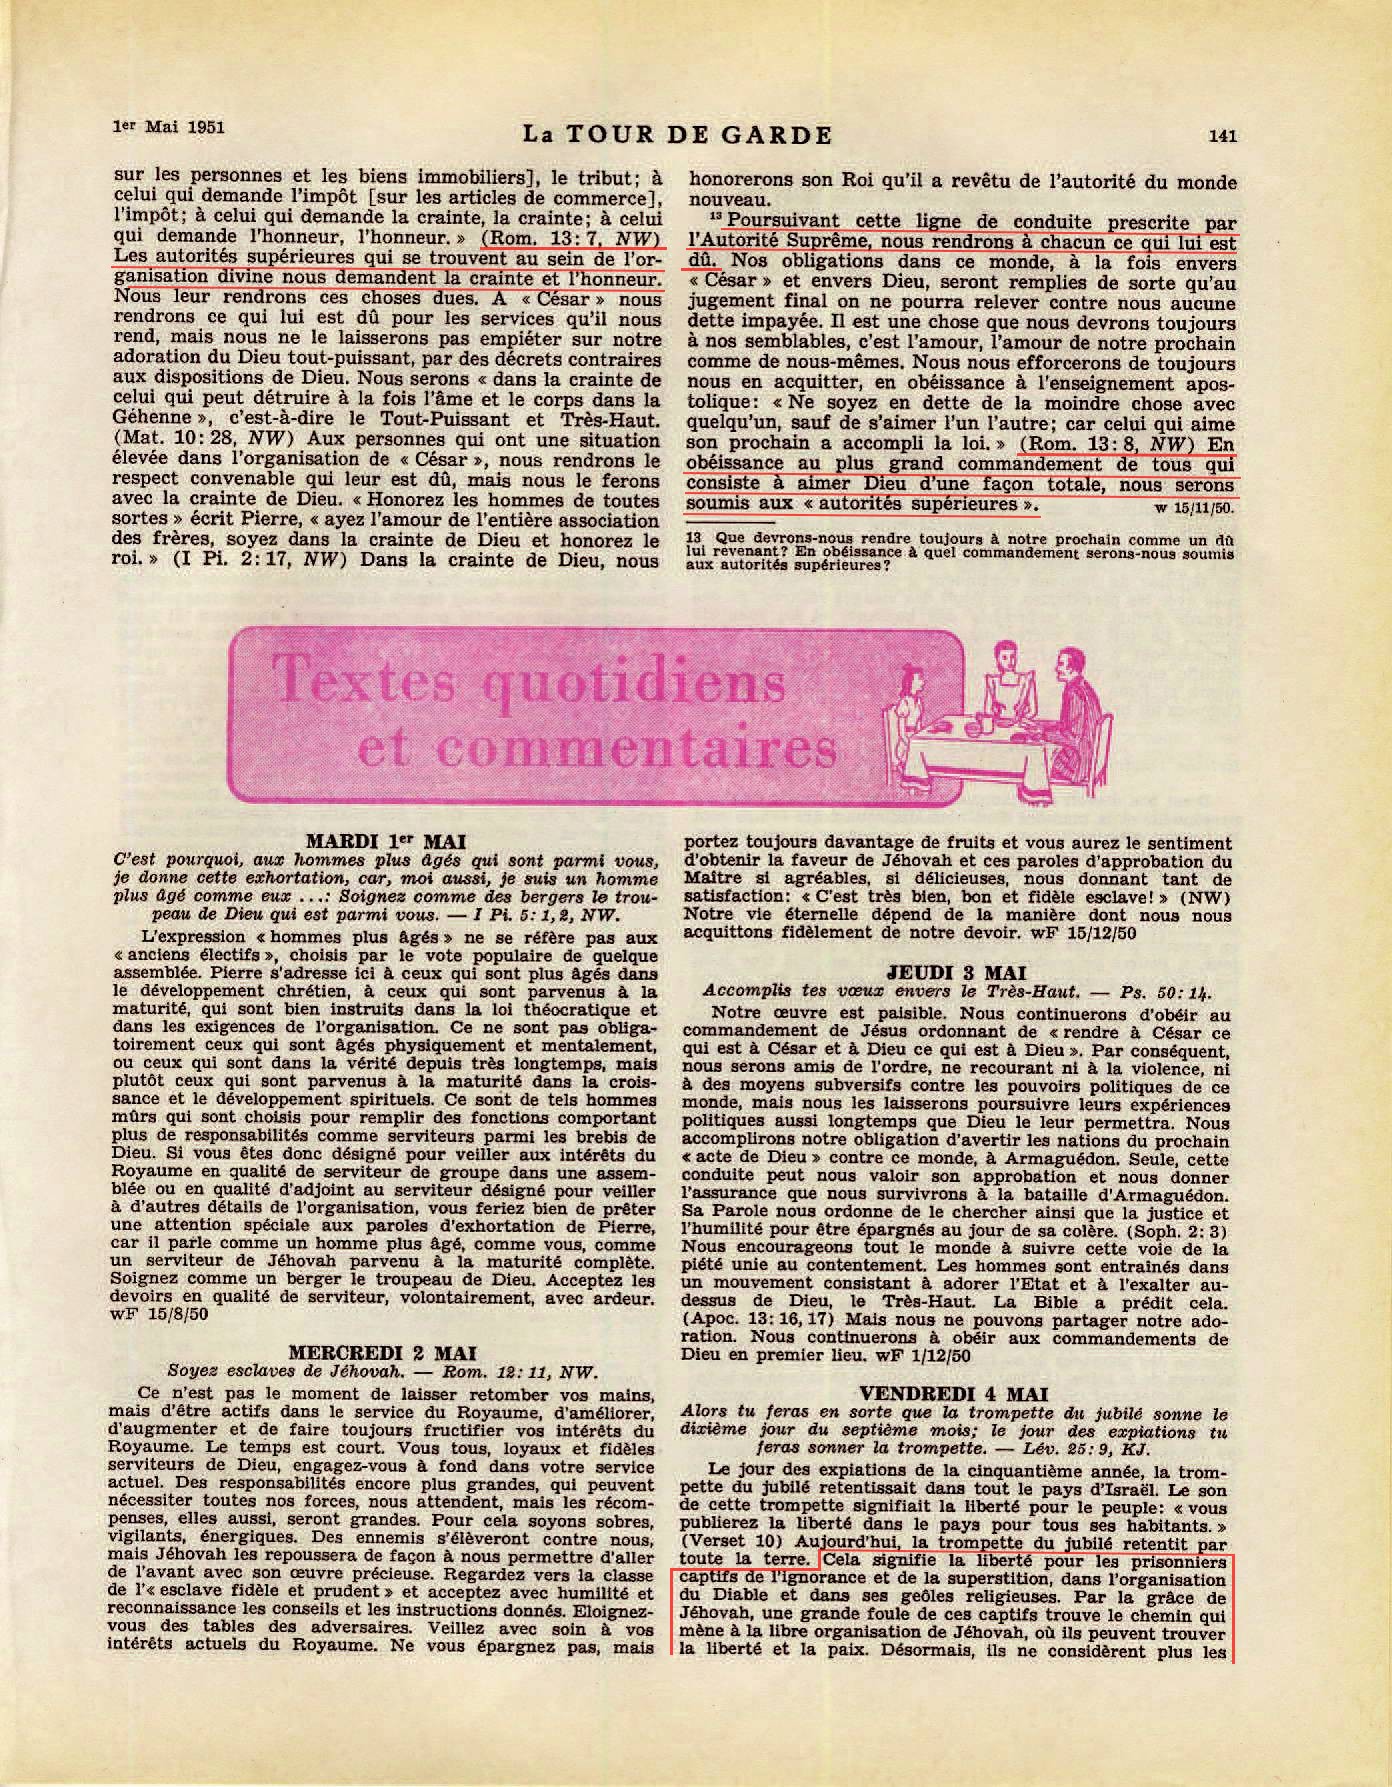 iLes autorités supérieures - Page 2 La-Tour-de-Garde-1-mai-1951-p141